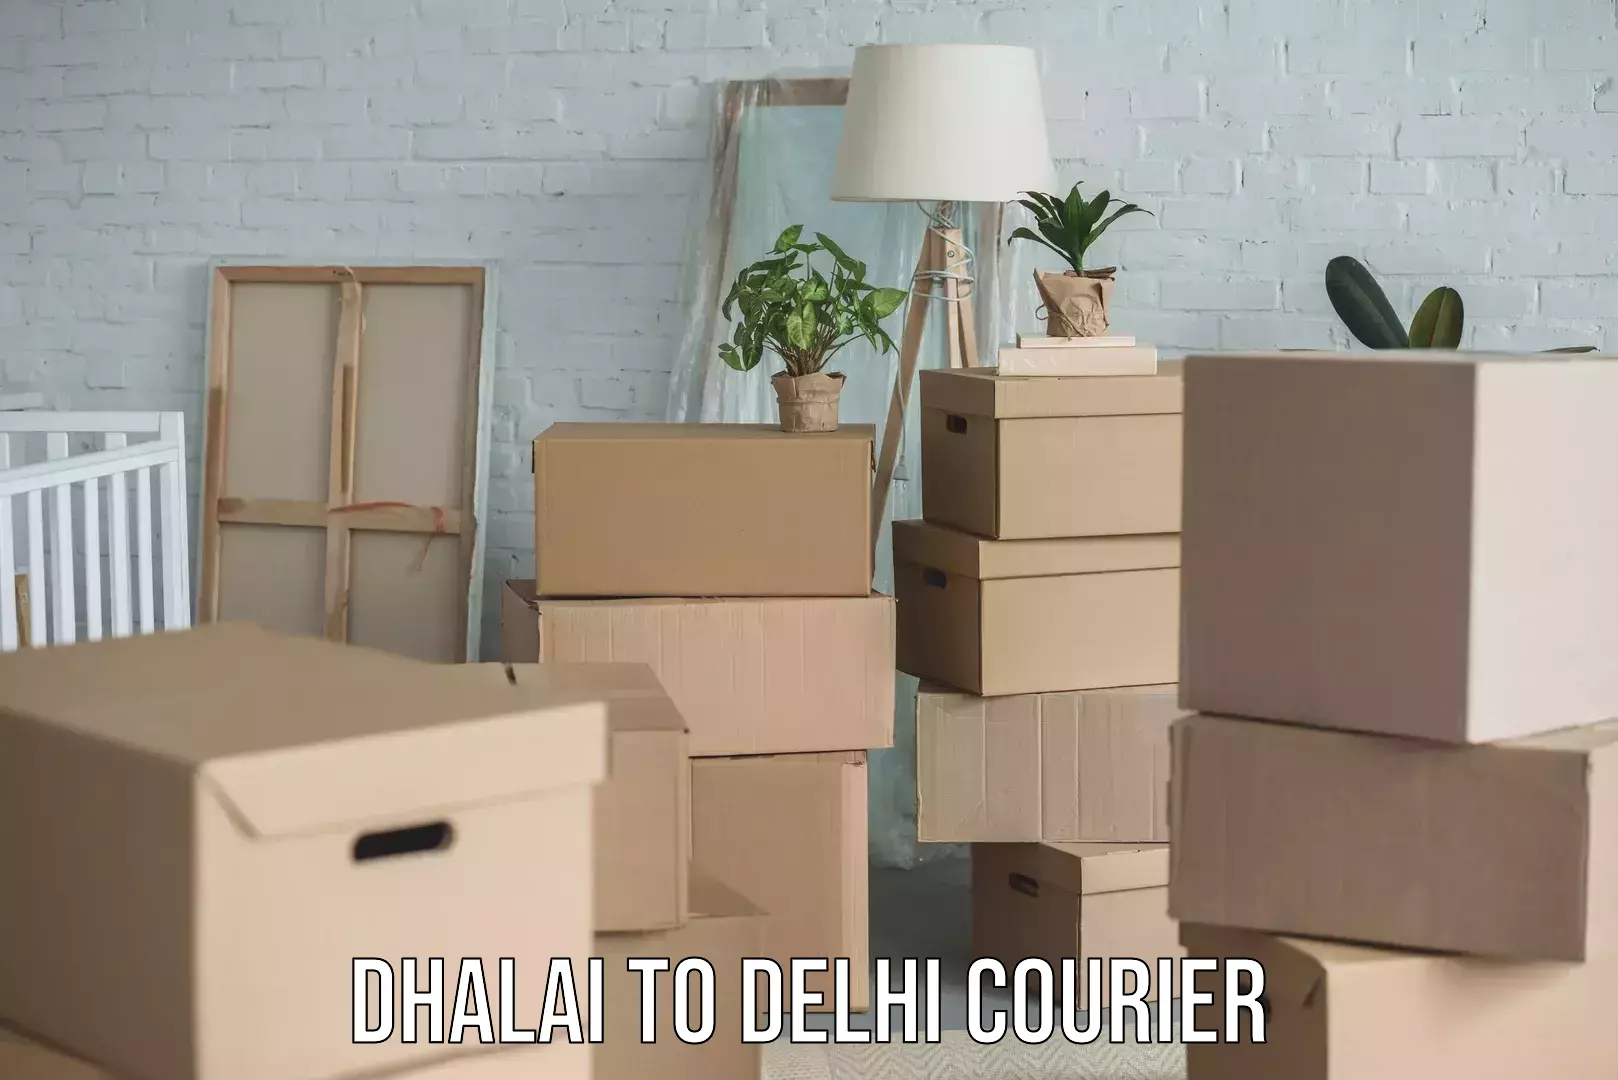 Professional parcel services Dhalai to Delhi